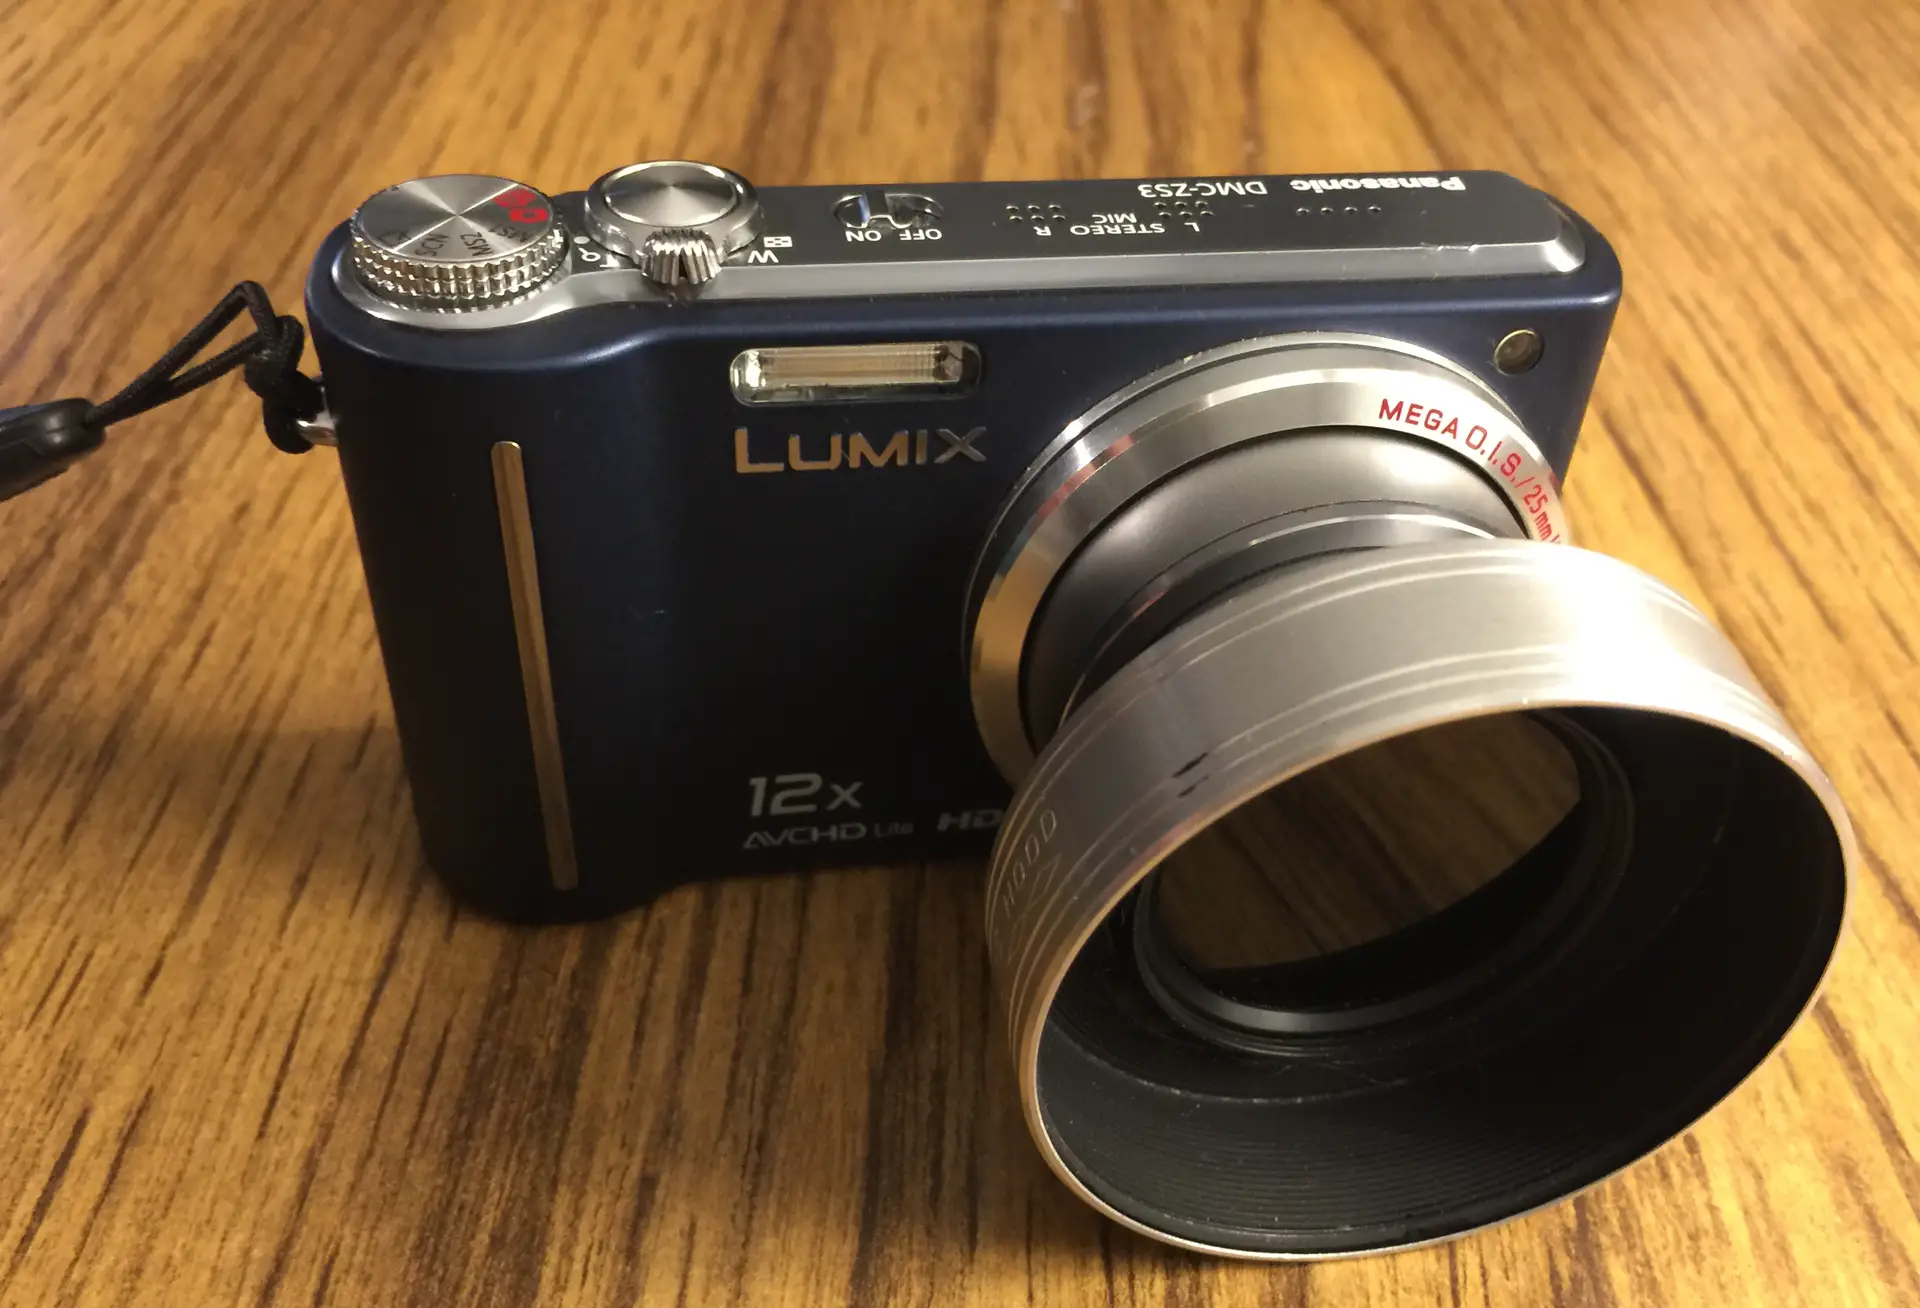 Lumix ZS3 camera with lens hood